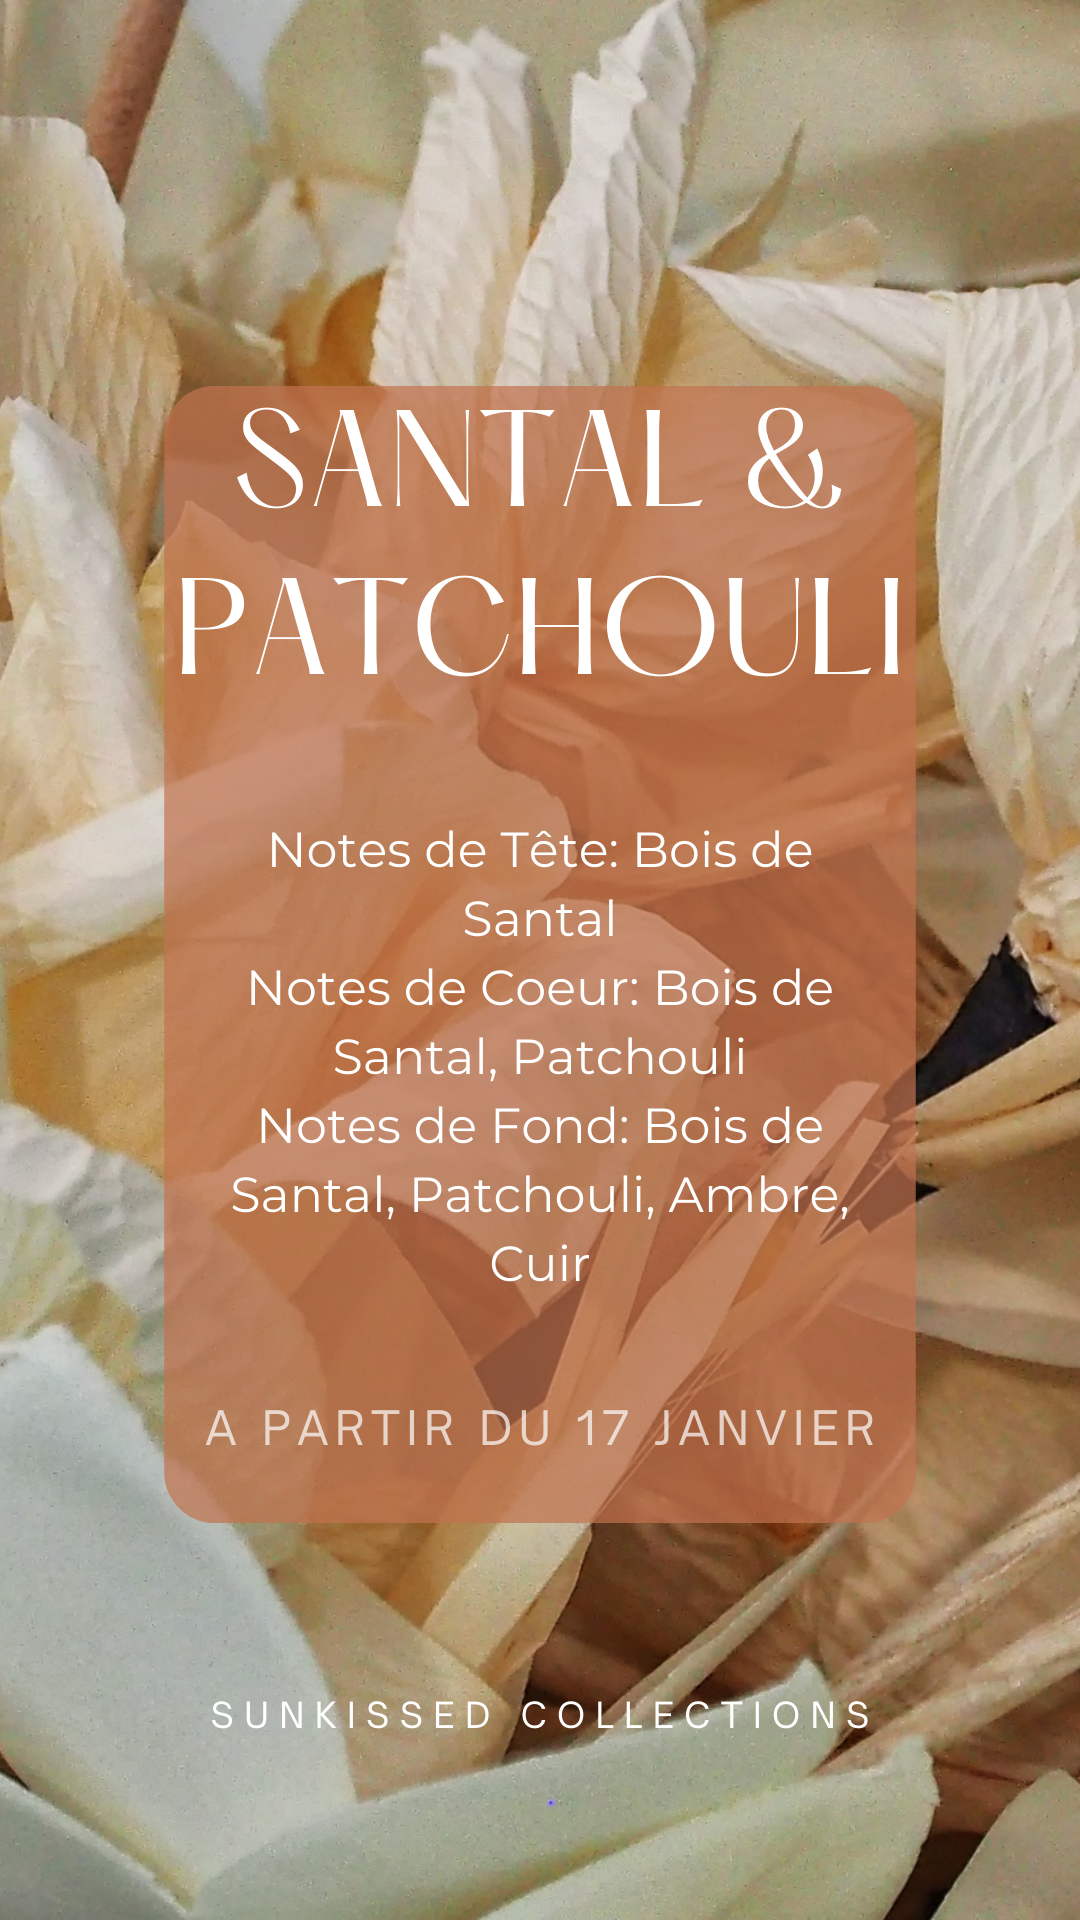 Fondant Parfumé - Santal & Patchouli